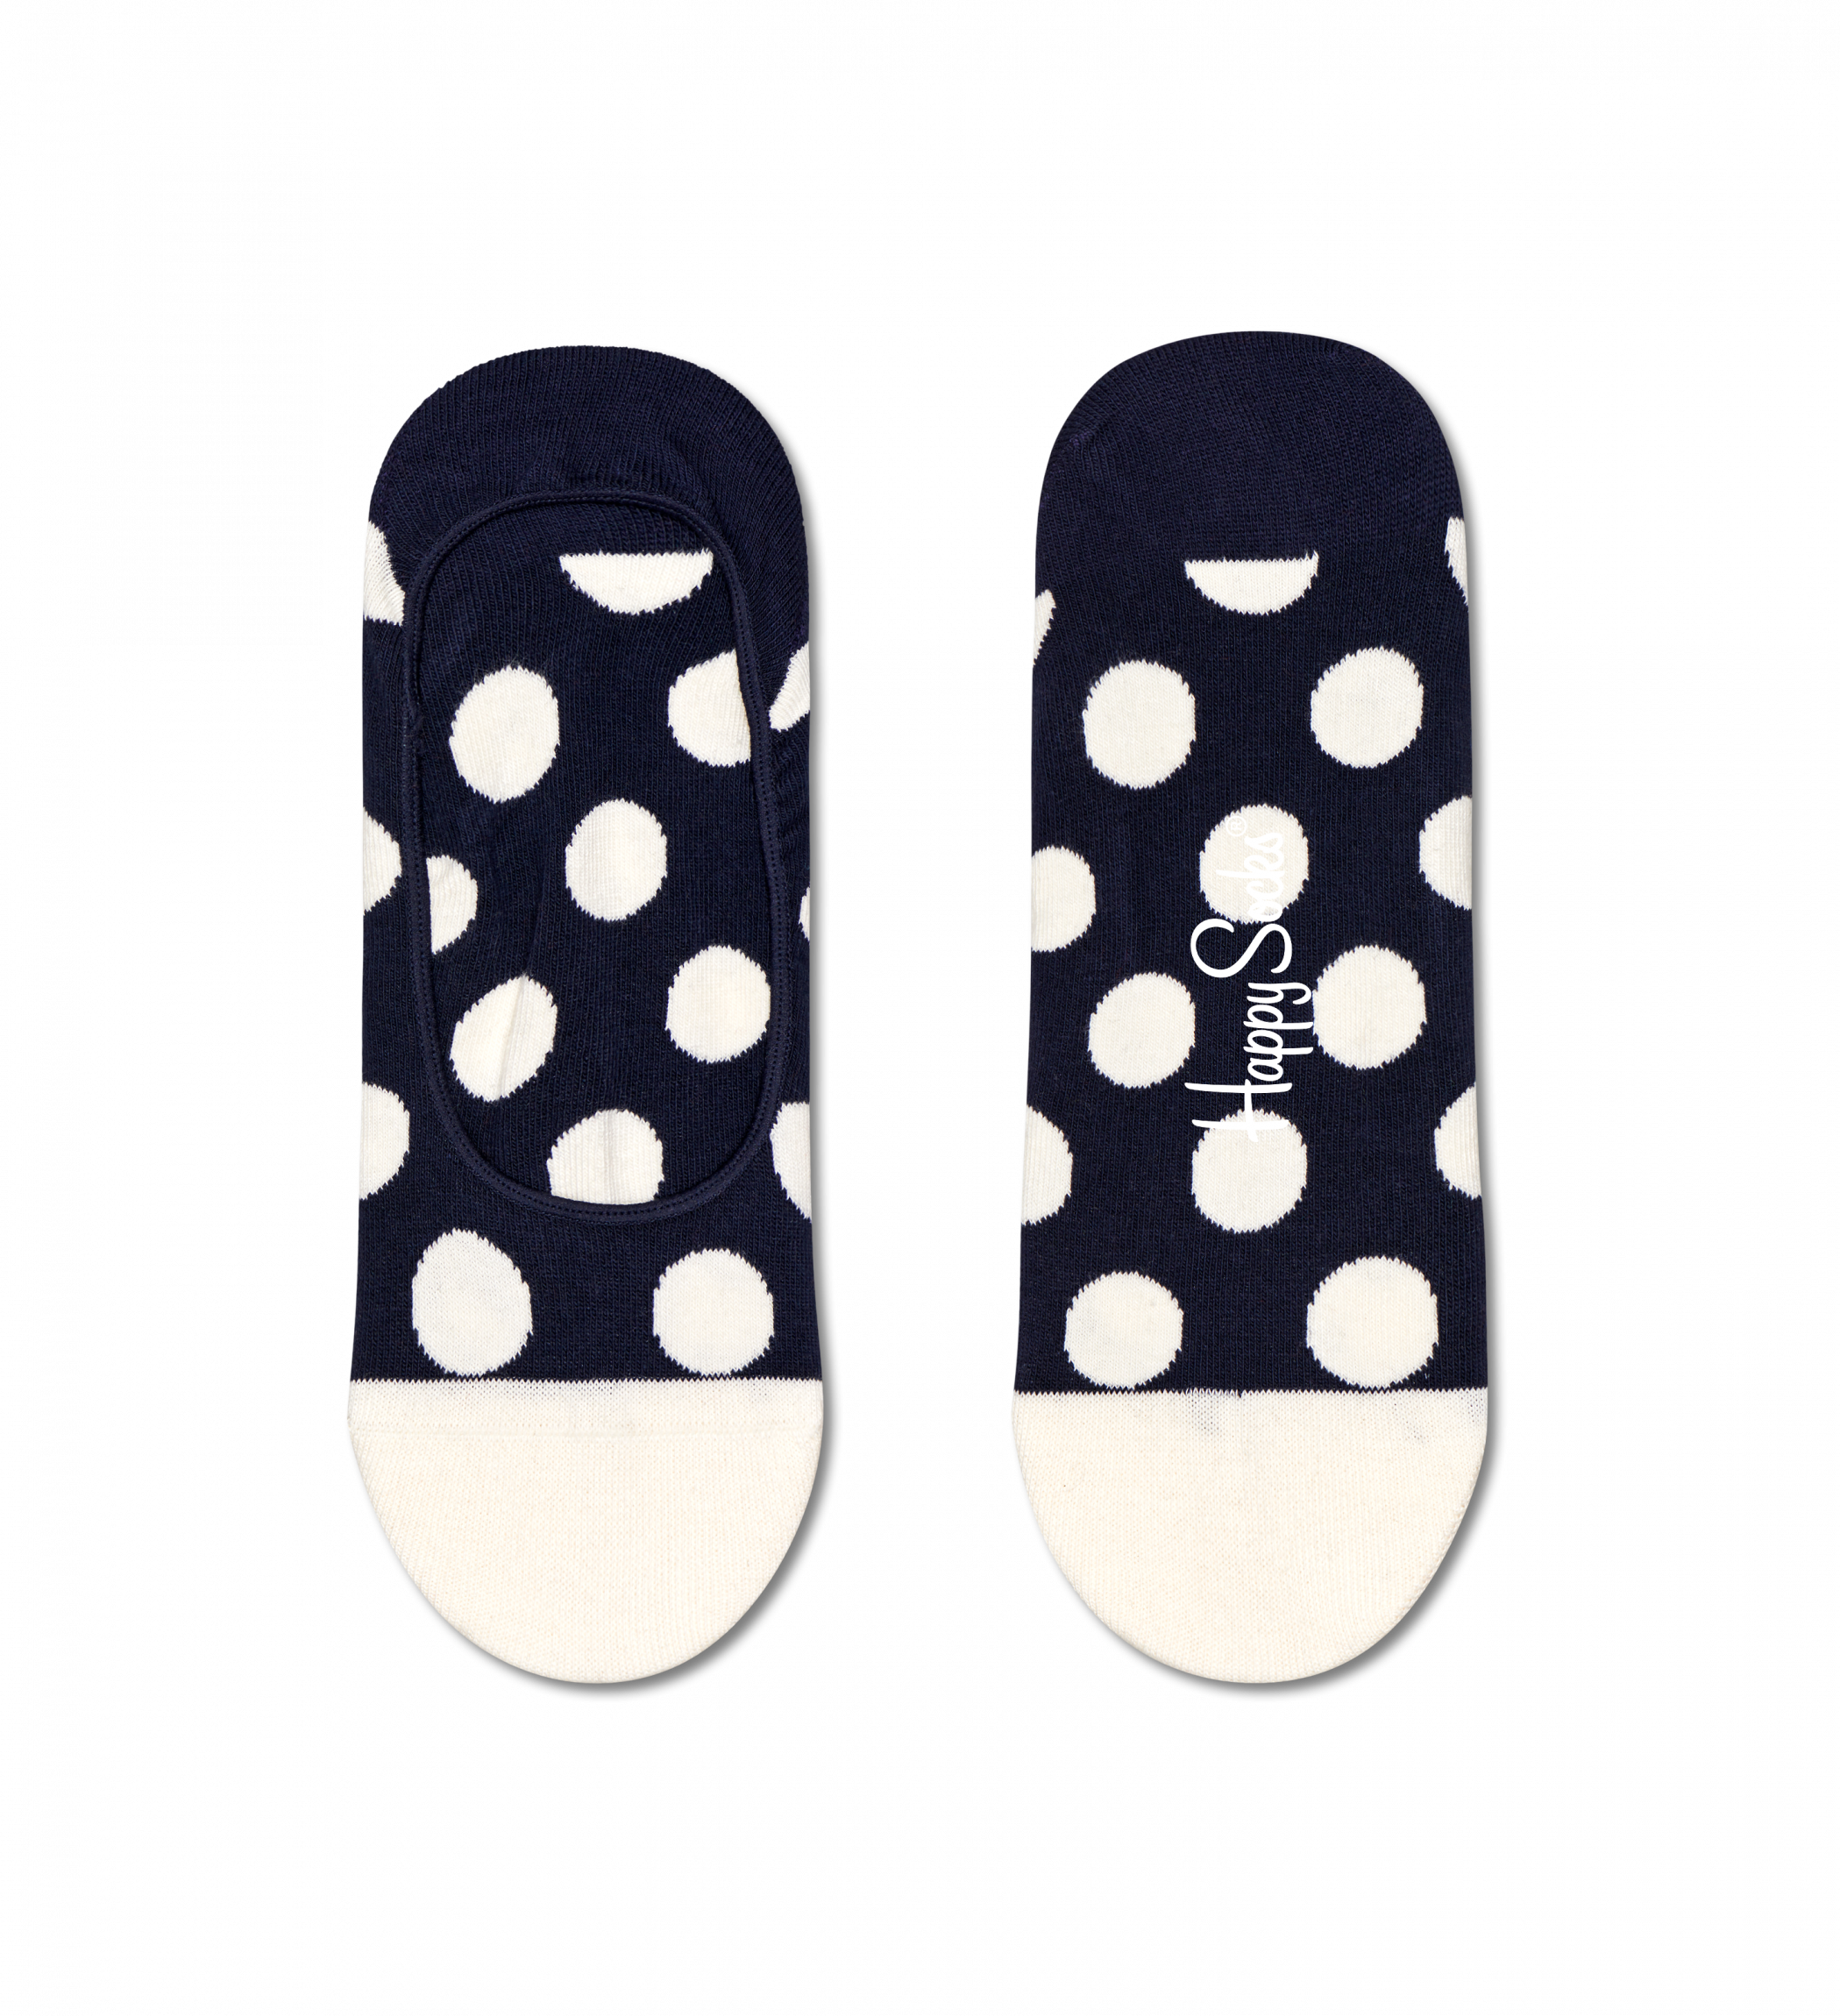 Modré nízké ponožky Happy Socks s puntíky, vzor Big Dot